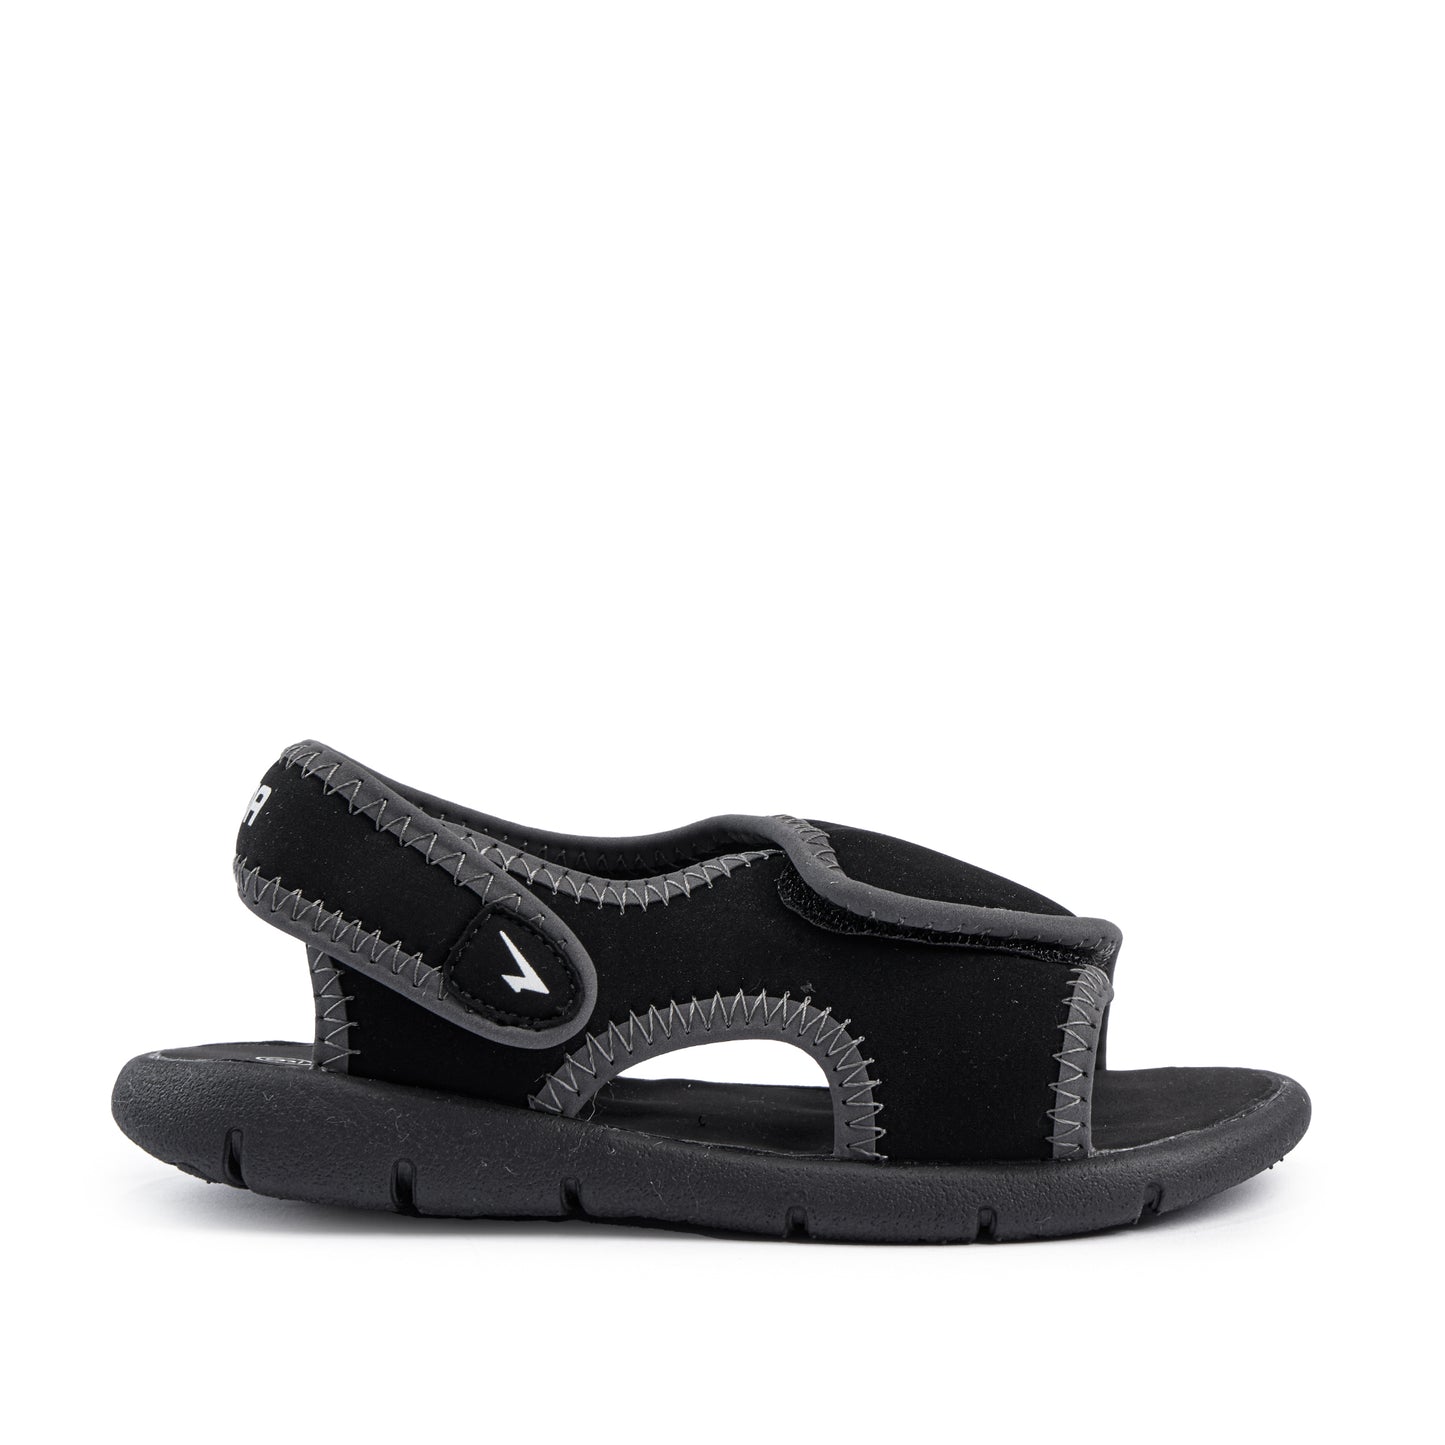 Neo Pack Infant Sandals - Black